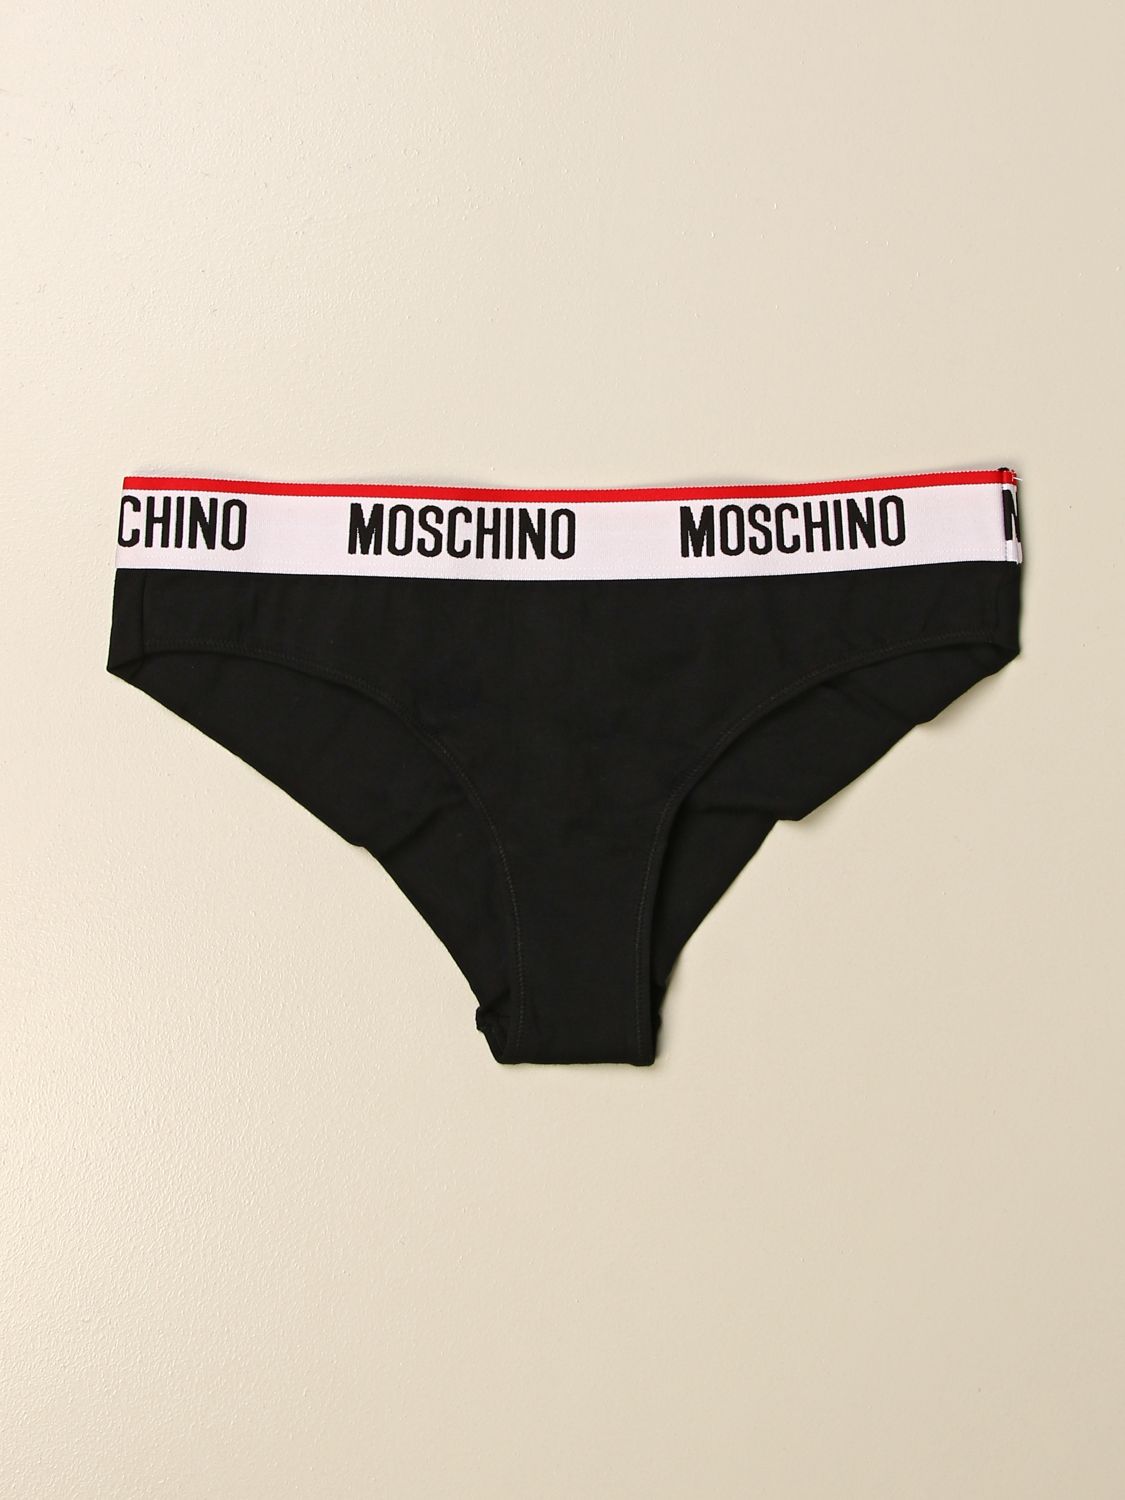 moschino womens underwear uk